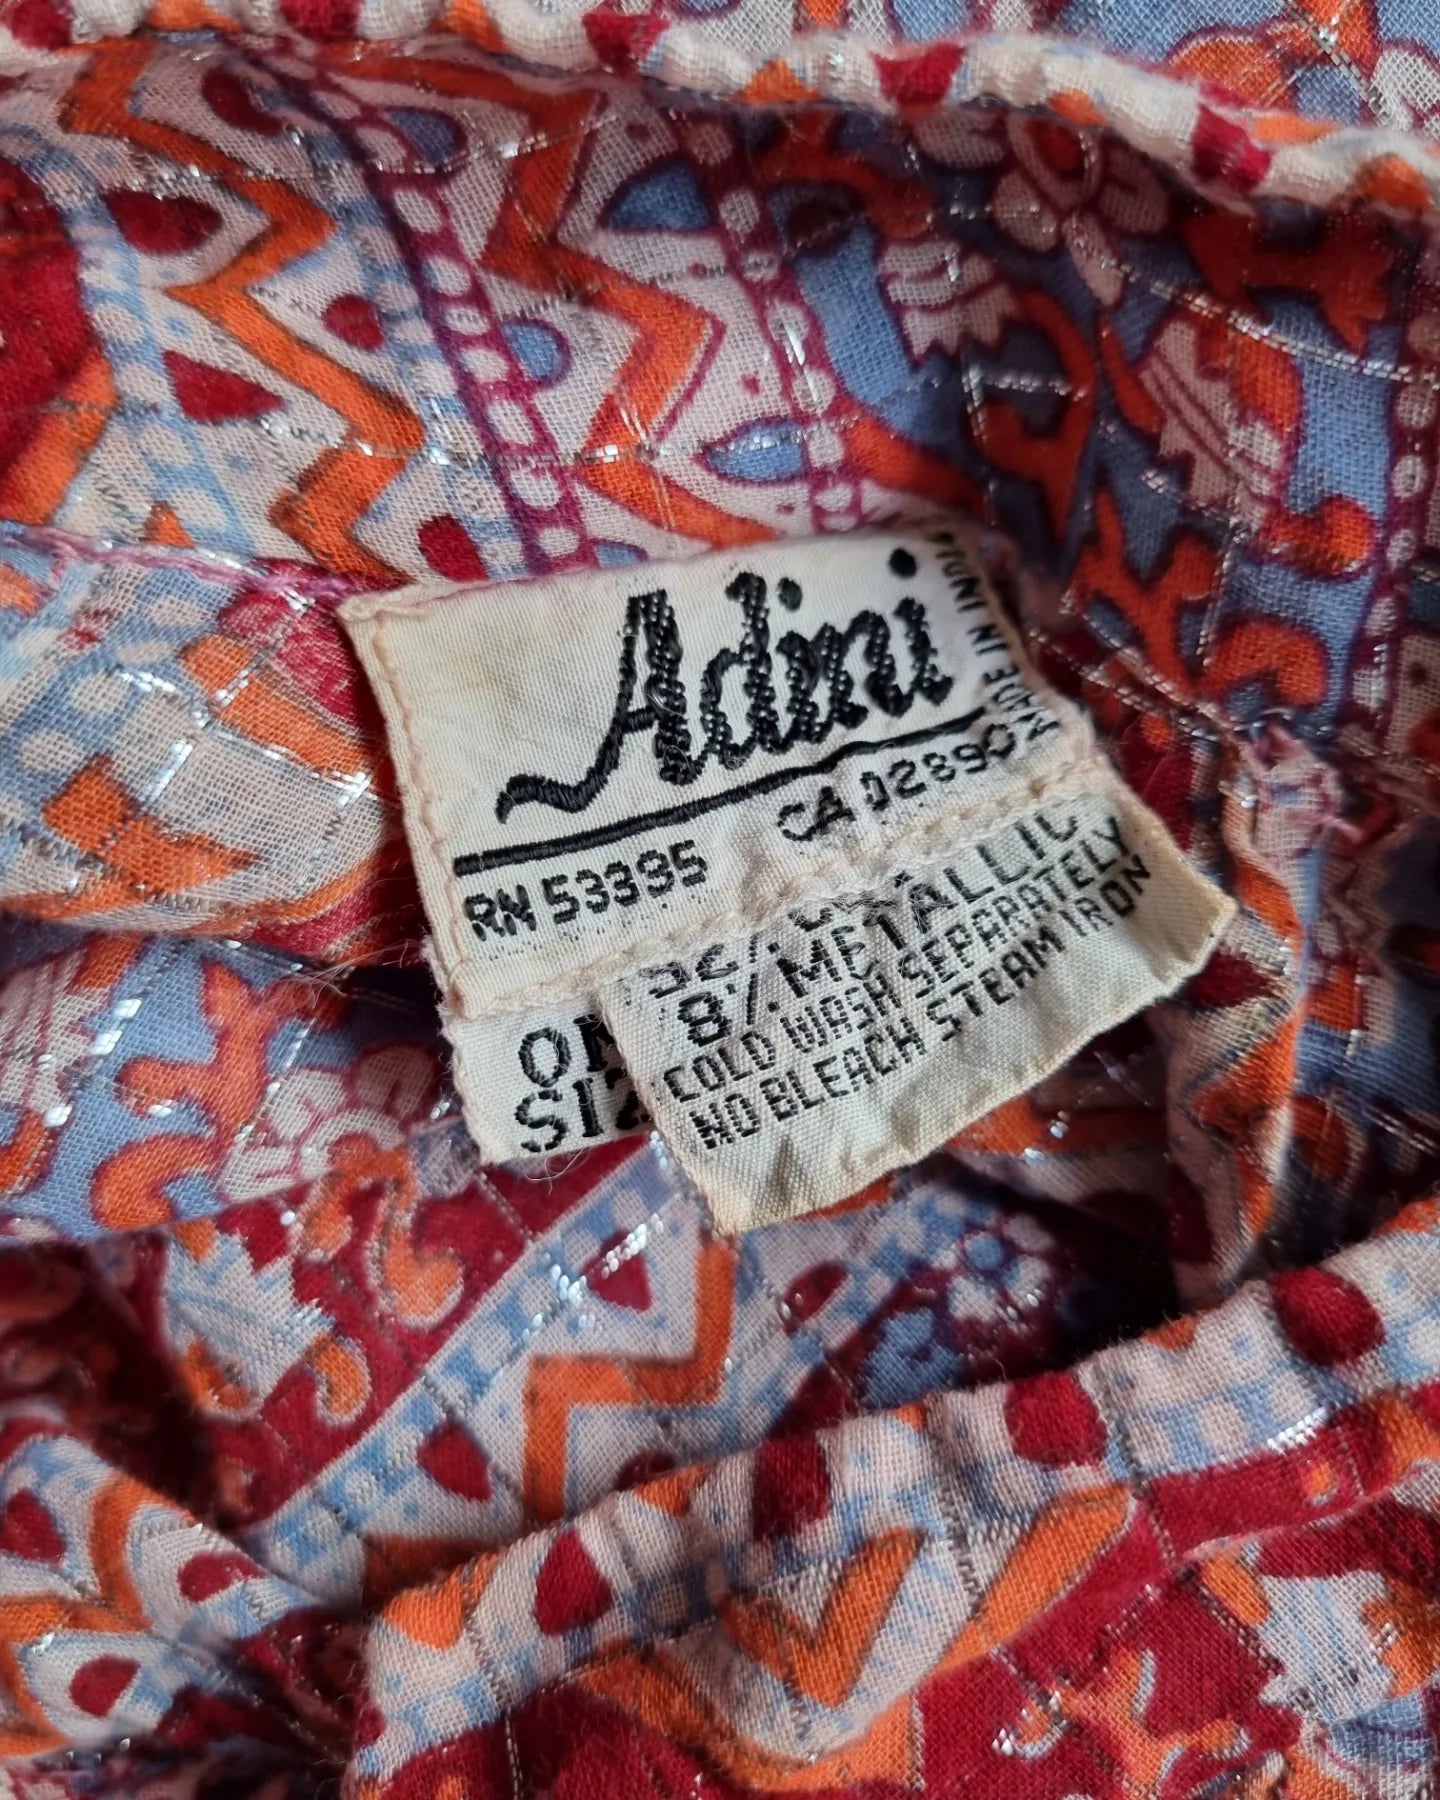 Vintage Adini Indian kaftan dress